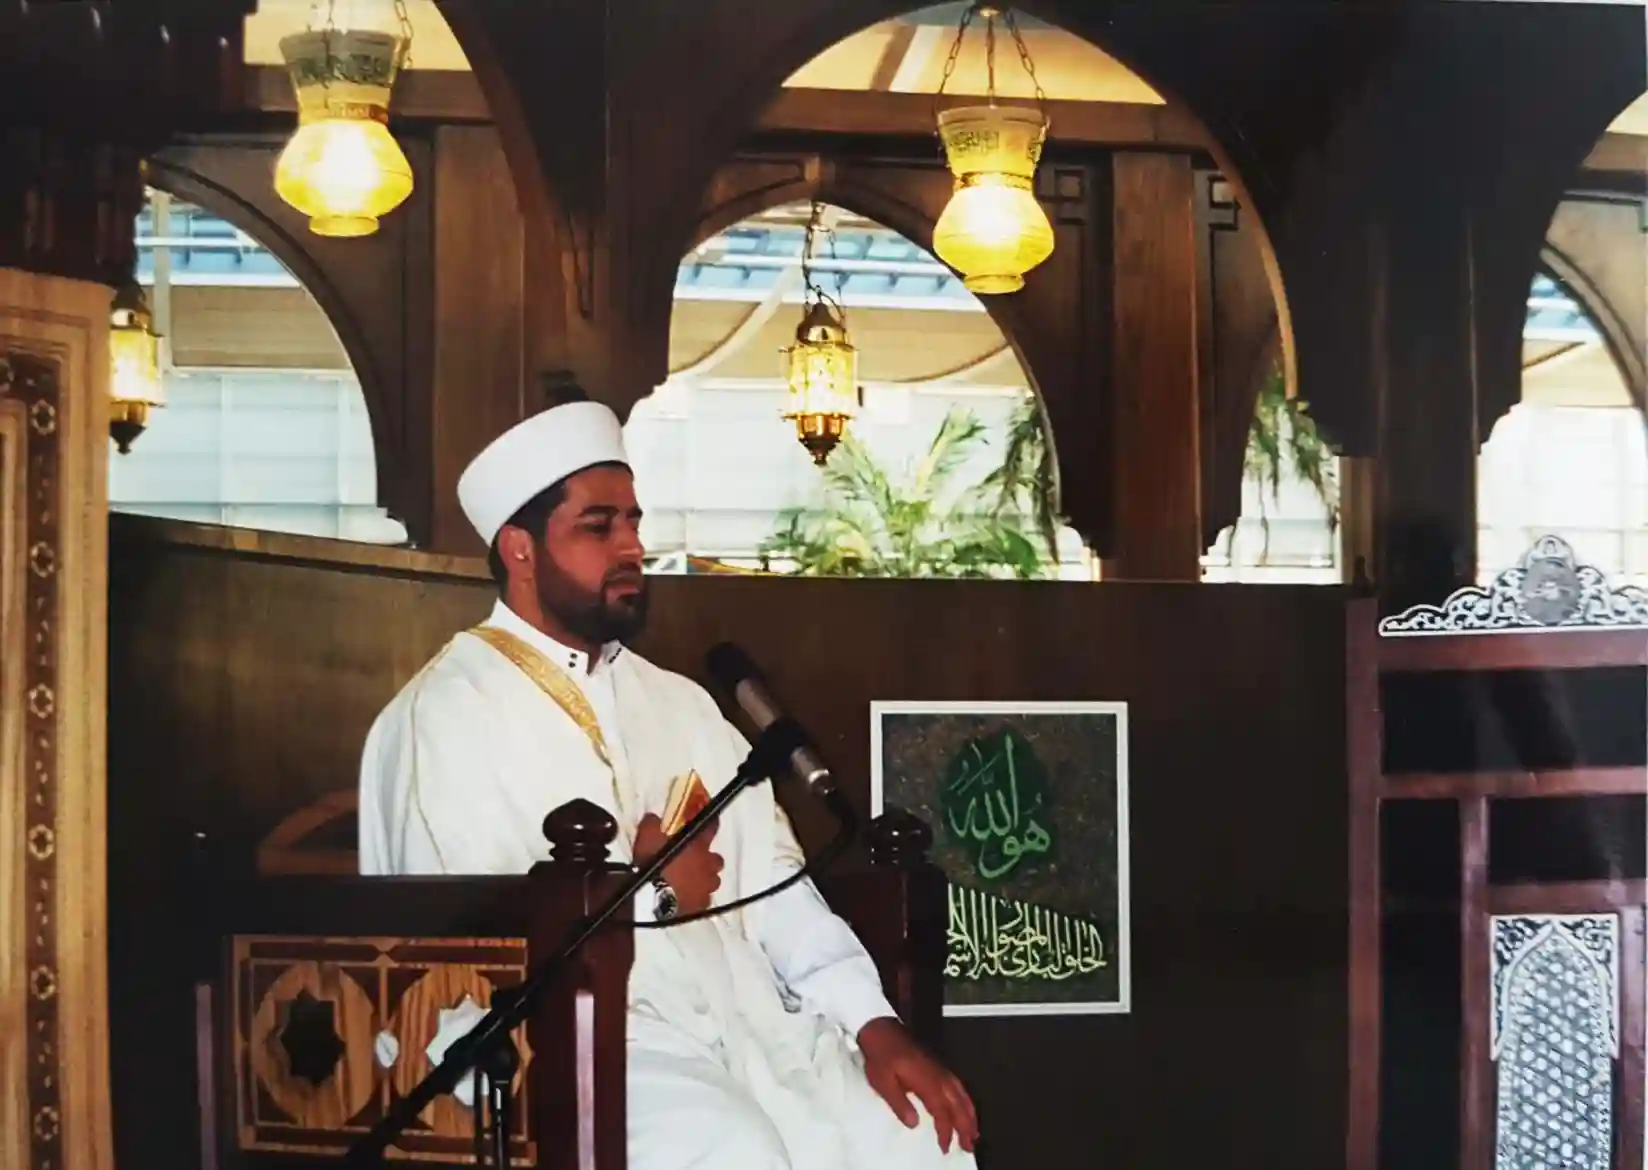 Abbildung-eines-imams-waehrend-seiner-predigt-im-islampavillon-bei-der-expo-in-hannover-im-jahr-2000-IISW